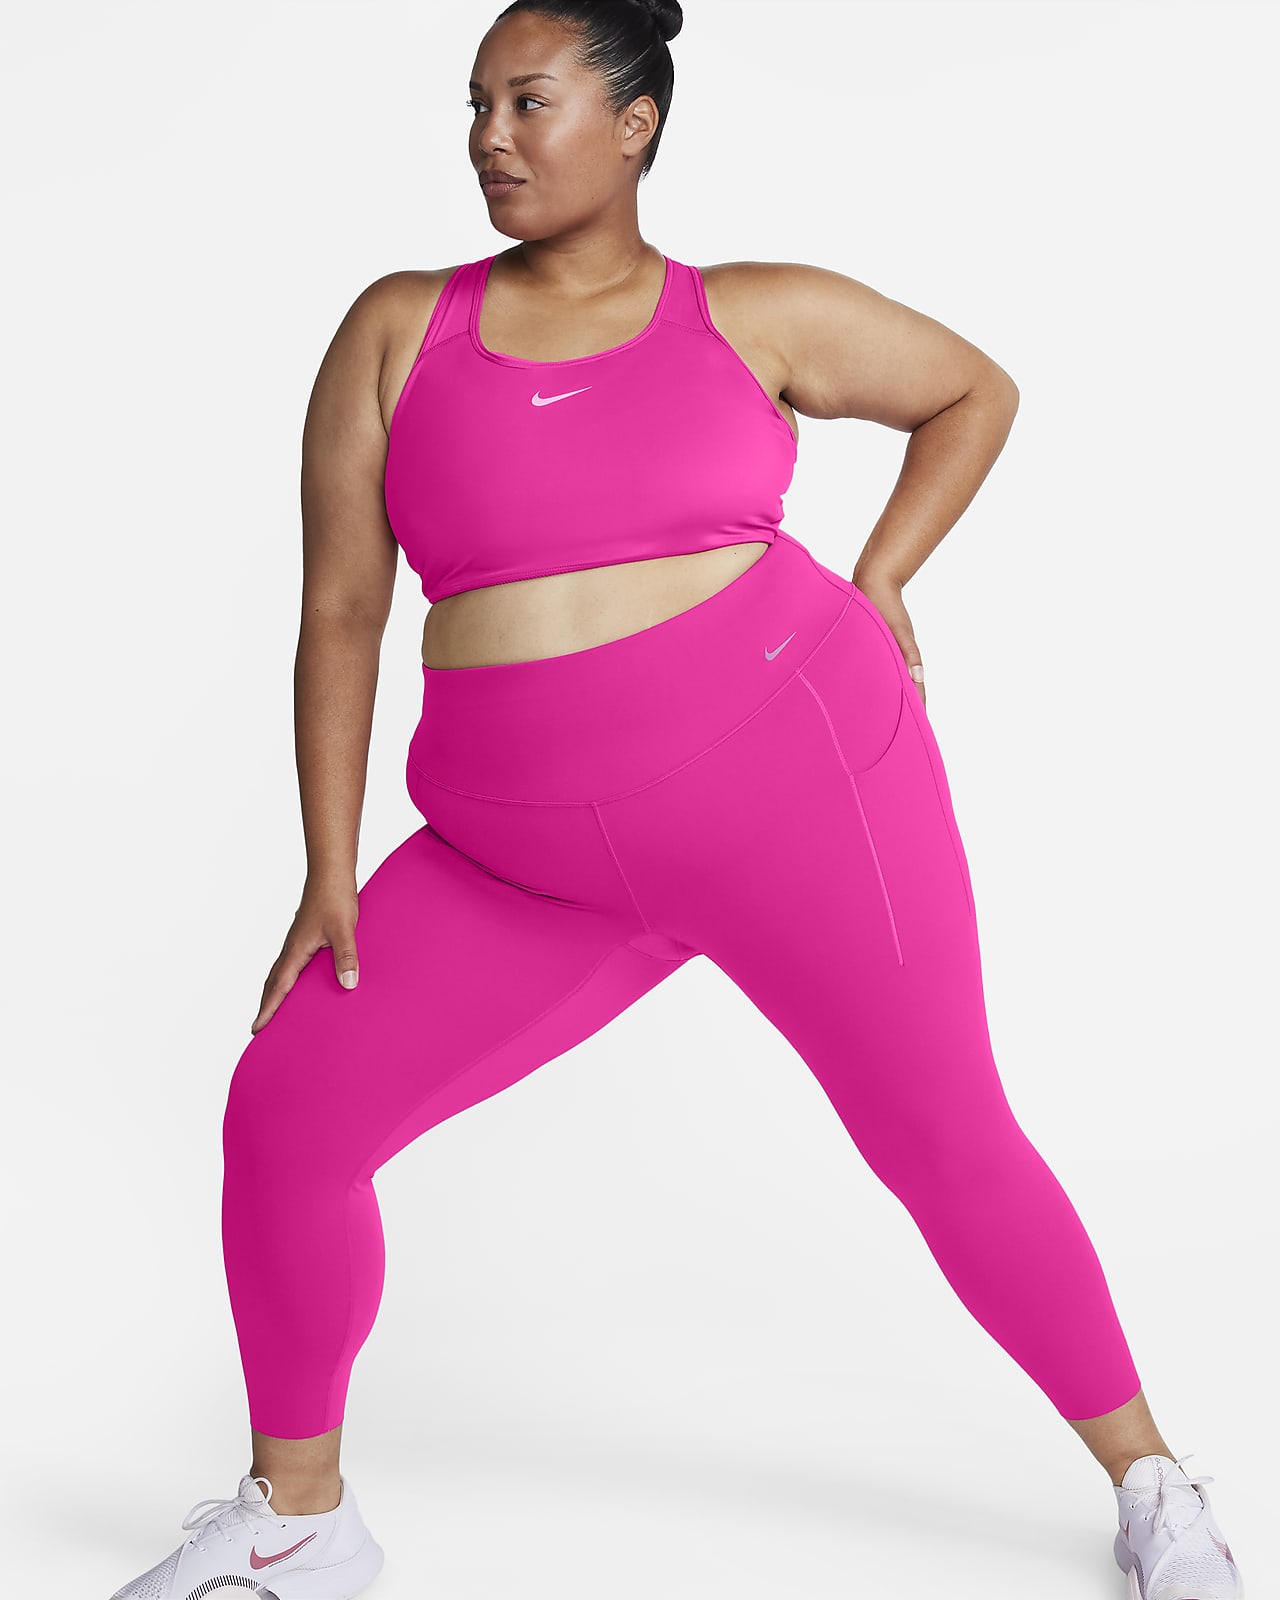 Nike Universa L eggings de 7/8 de talle alto y sujeción media con bolsillos (Talla grande) - Mujer